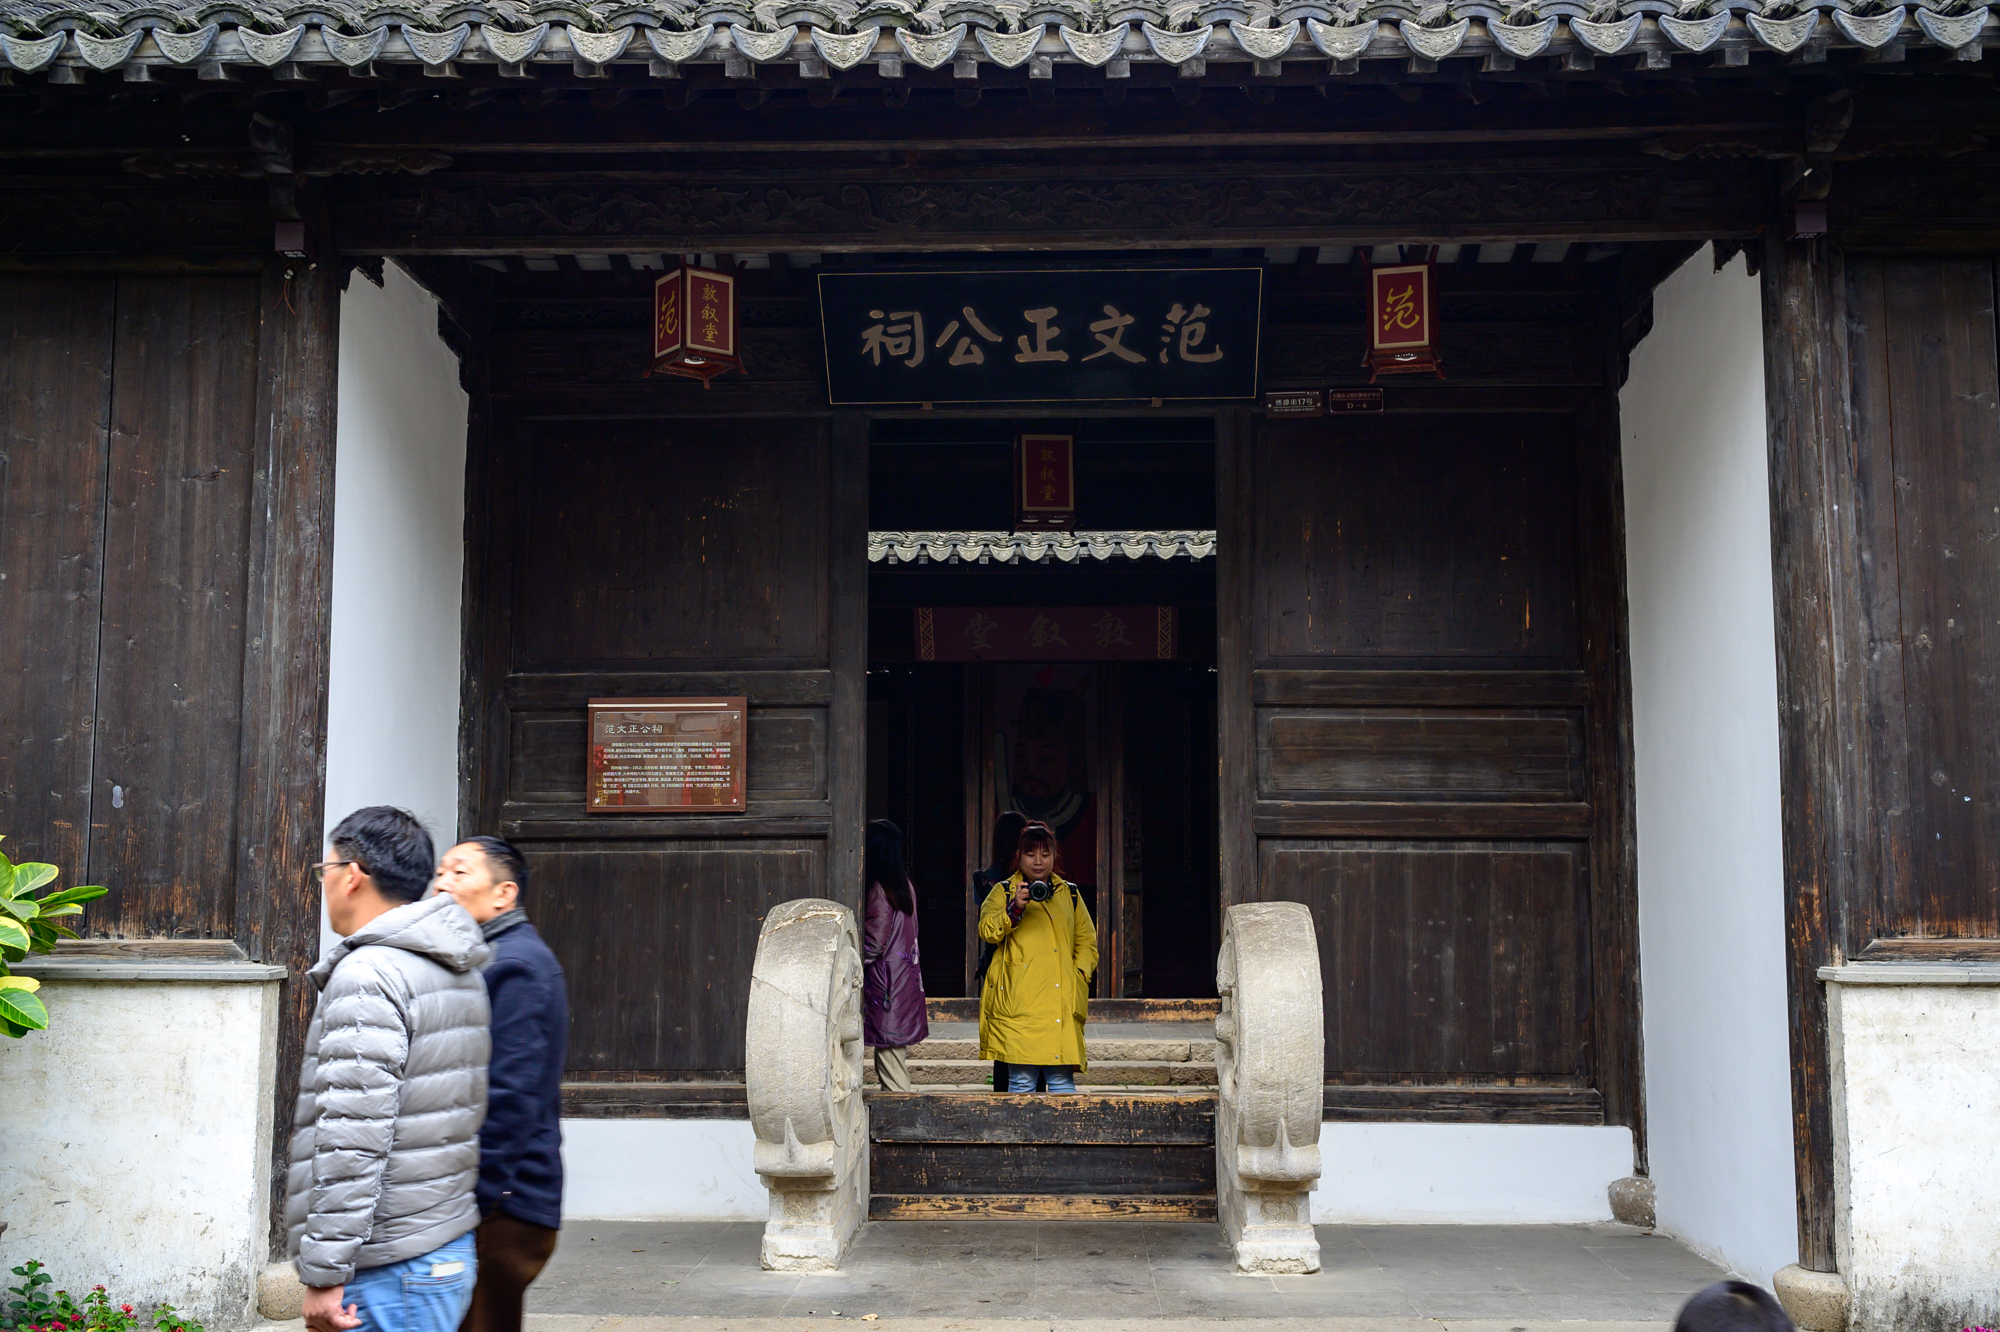 走进无锡最古老的街区惠山古镇探访历史名人祠堂范文正公祠